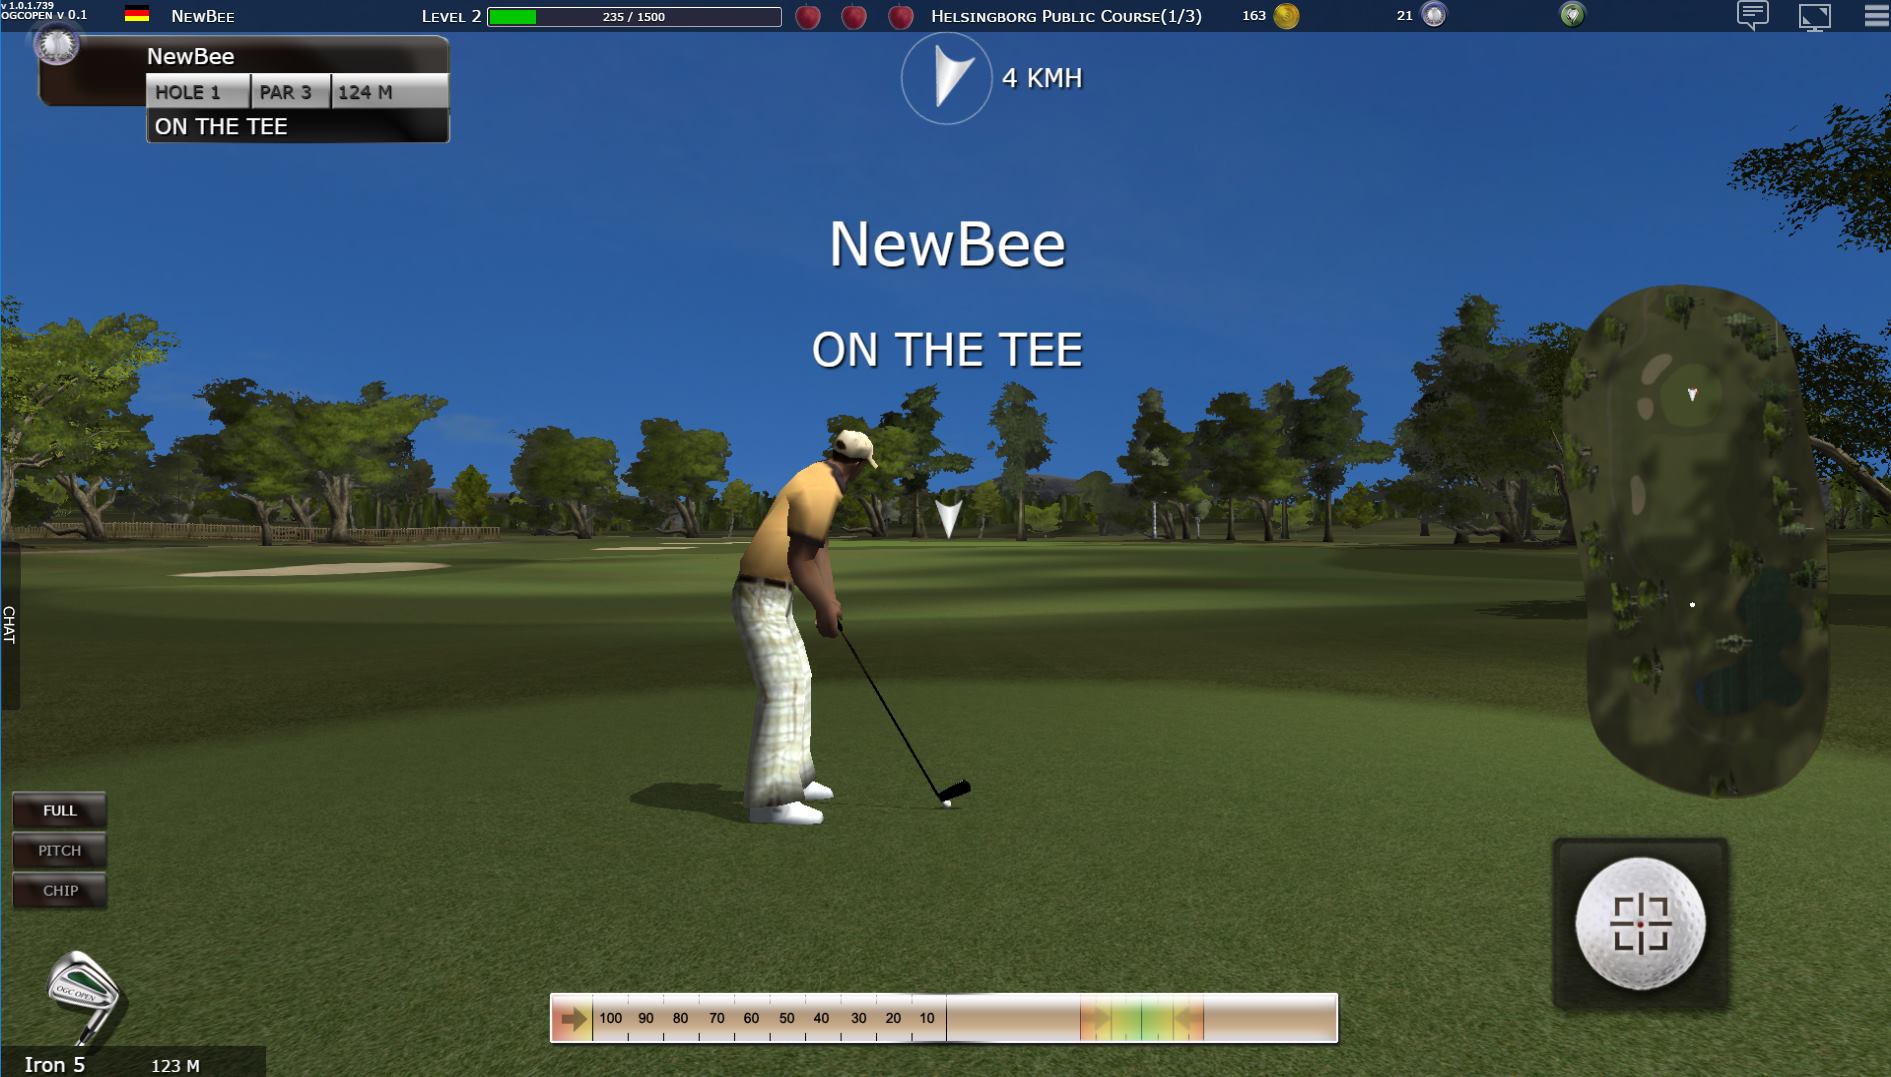 Golf Game Online